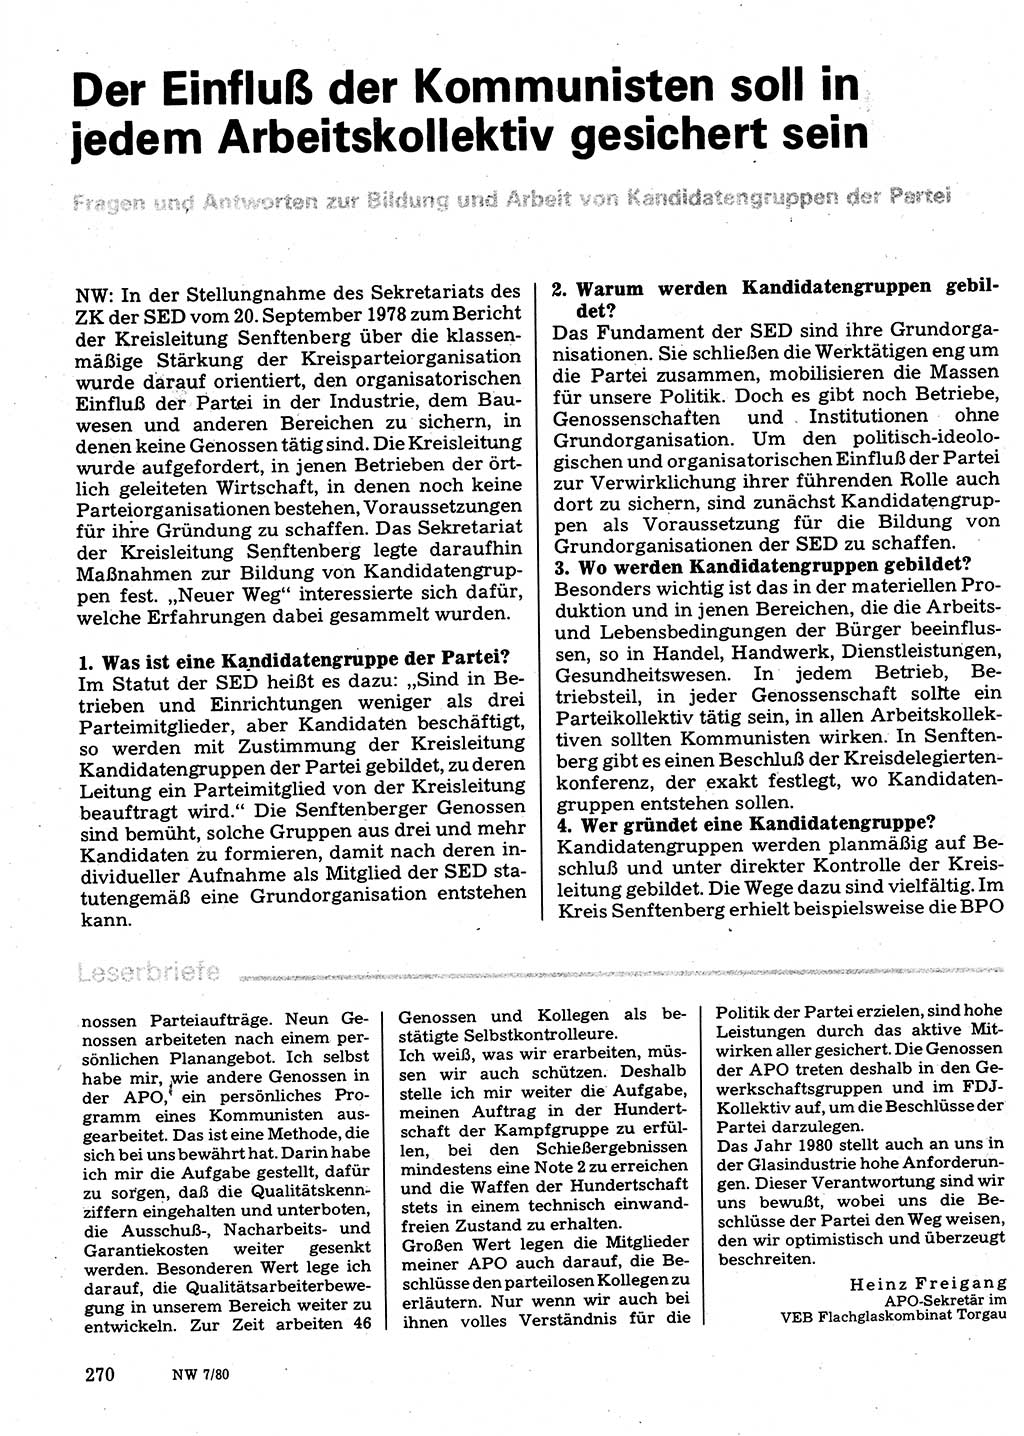 Neuer Weg (NW), Organ des Zentralkomitees (ZK) der SED (Sozialistische Einheitspartei Deutschlands) für Fragen des Parteilebens, 35. Jahrgang [Deutsche Demokratische Republik (DDR)] 1980, Seite 270 (NW ZK SED DDR 1980, S. 270)